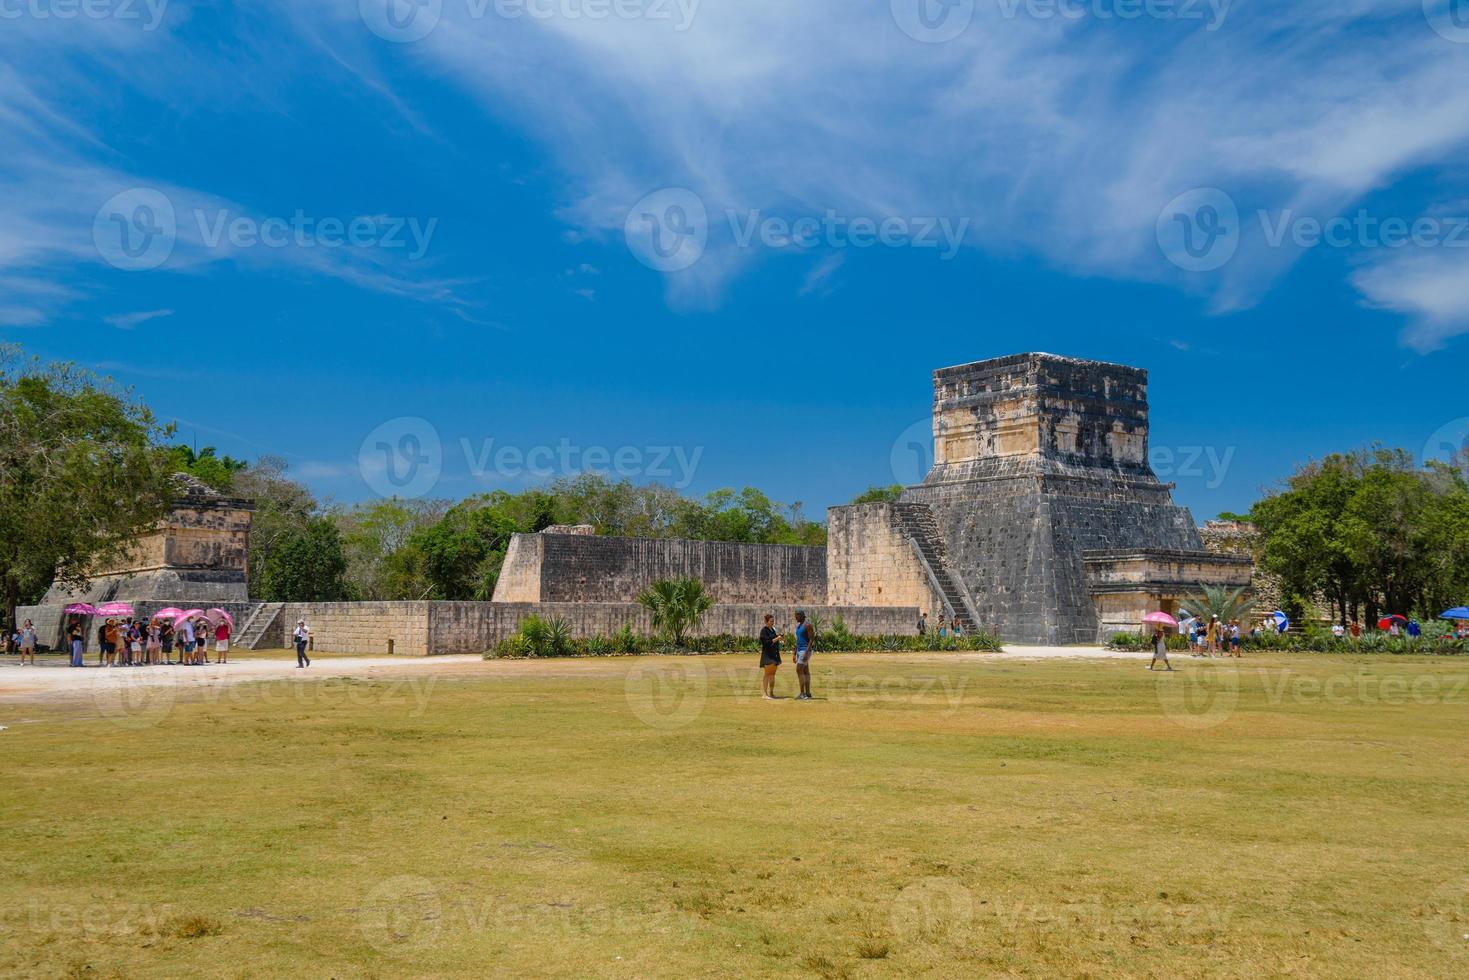 le grand terrain de balle, gran juego de pelote du site archéologique de chichen itza au yucatan, mexique photo